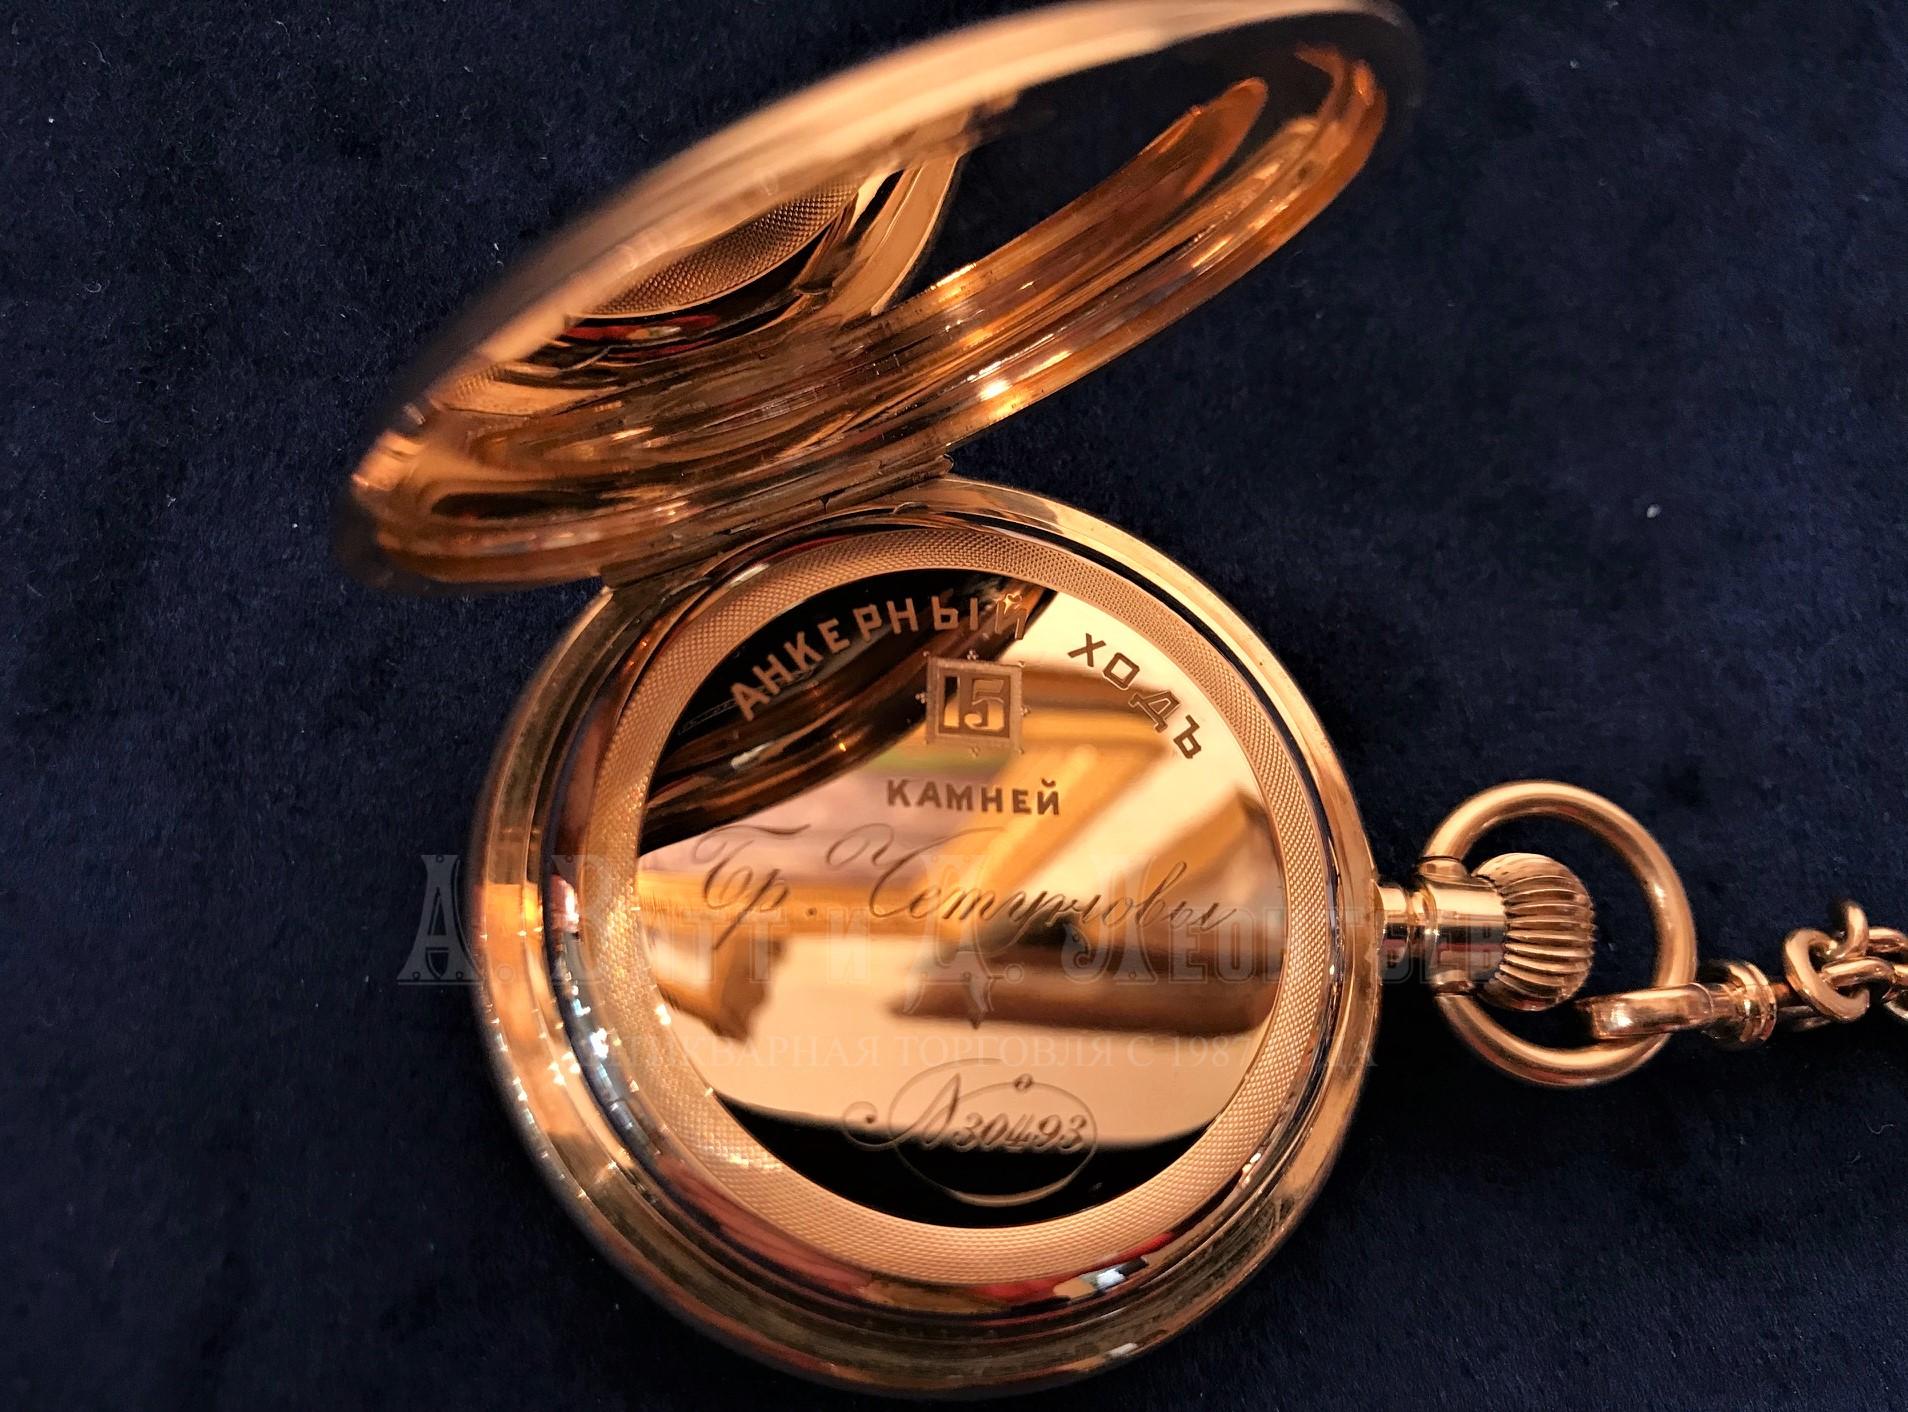 Карманные золотые русские антикварные часы Братья Четуновы в закрытом корпусе 56 пробы